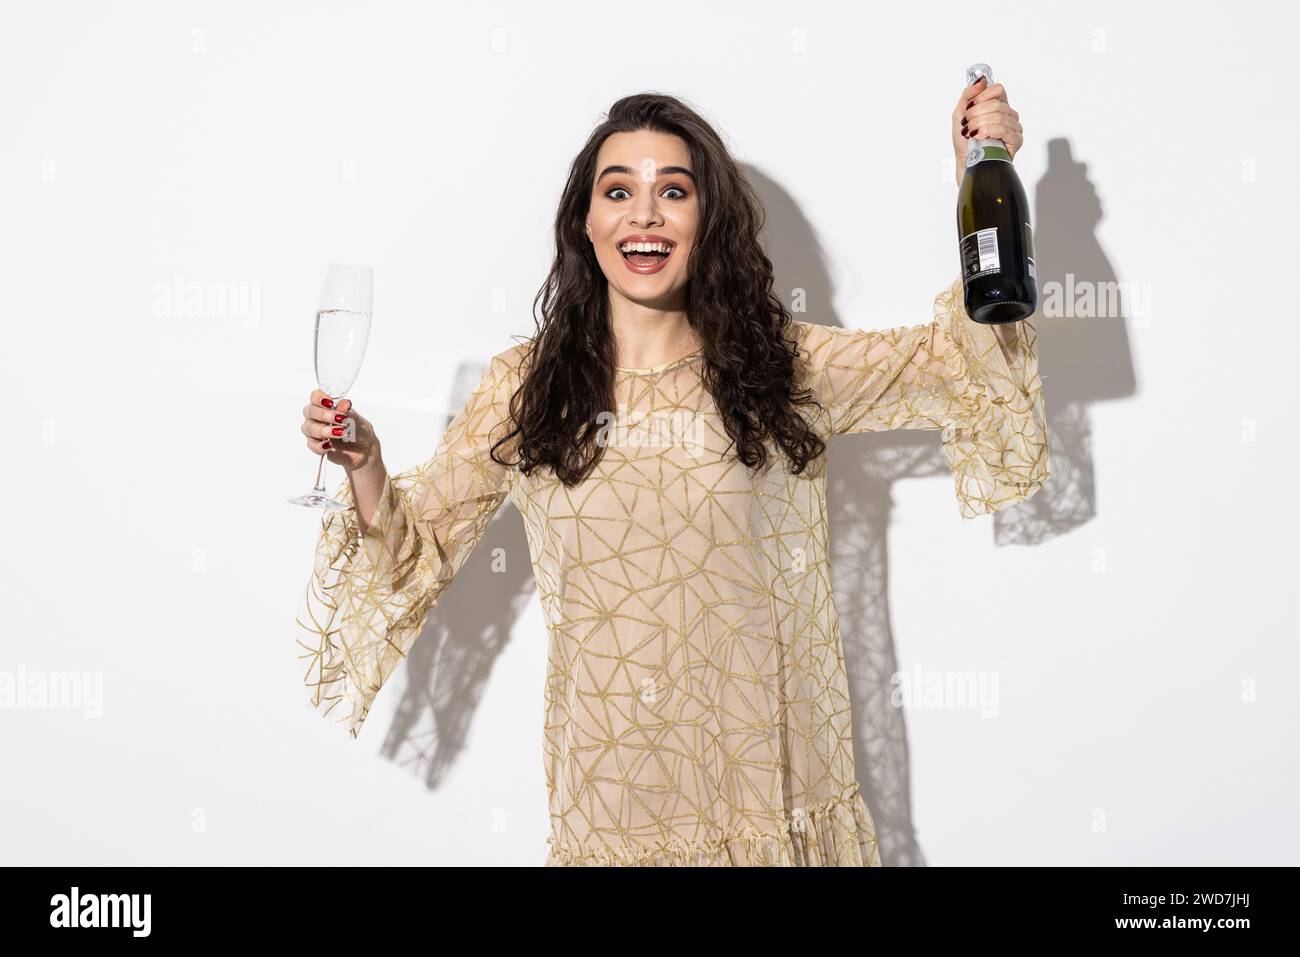 Femme en robe buvant du champagne de bouteille isolée sur un fond blanc Banque D'Images